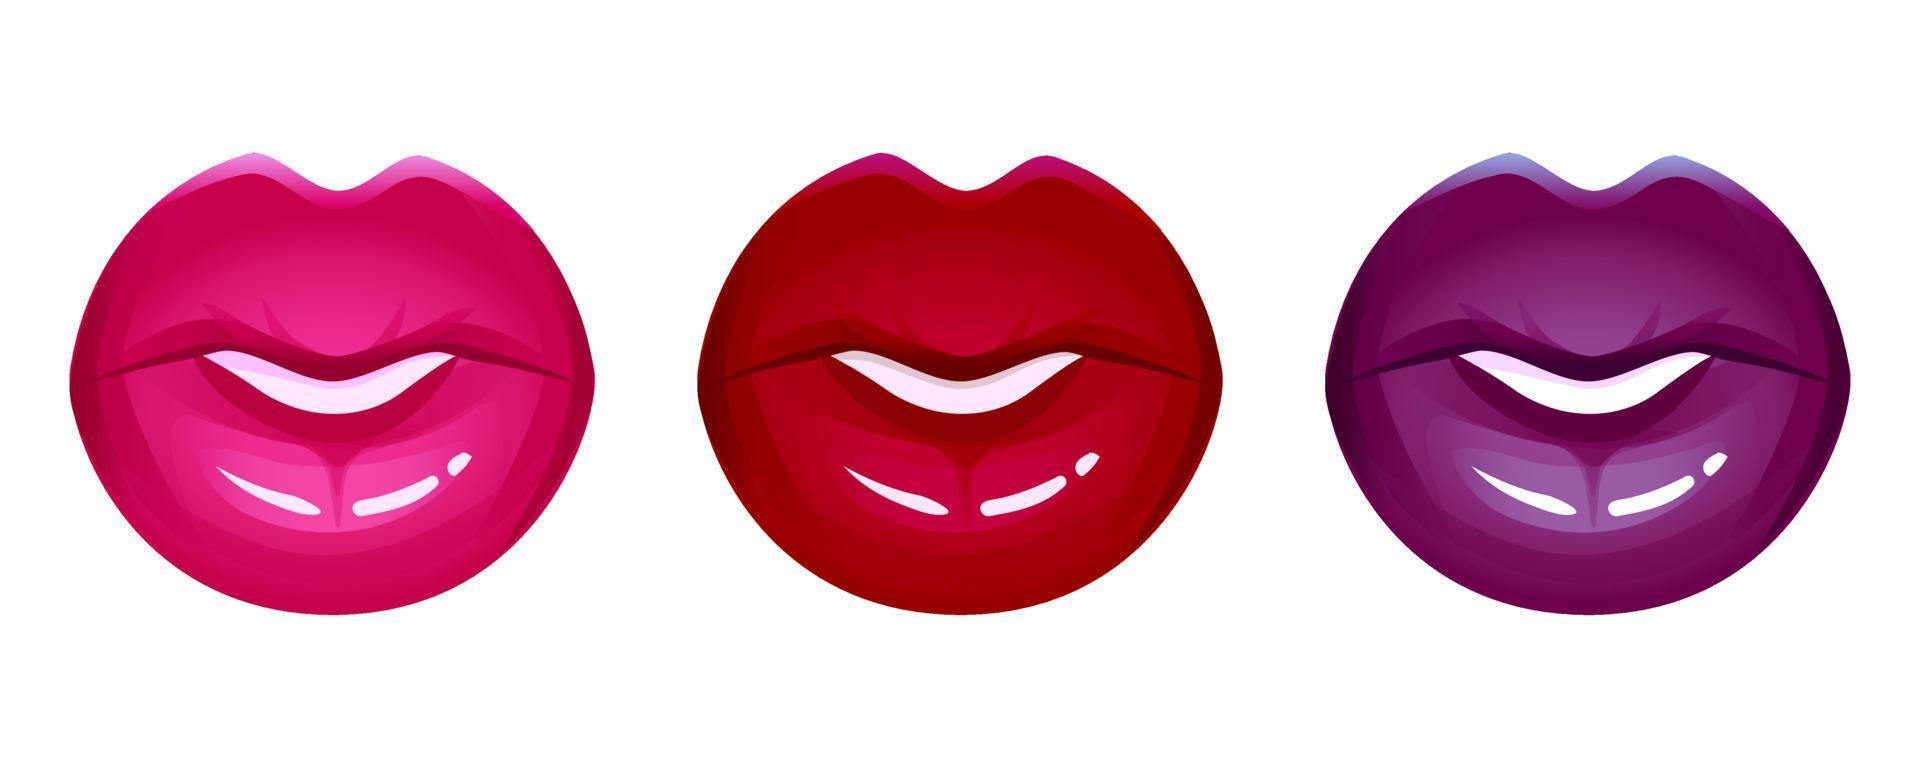 realistische Lippen Vektor Icon Set isoliert auf weiss. Frauen 3d Mund, roter glänzender glänzender Lippenstift. Mode-Glamour-Illustration.